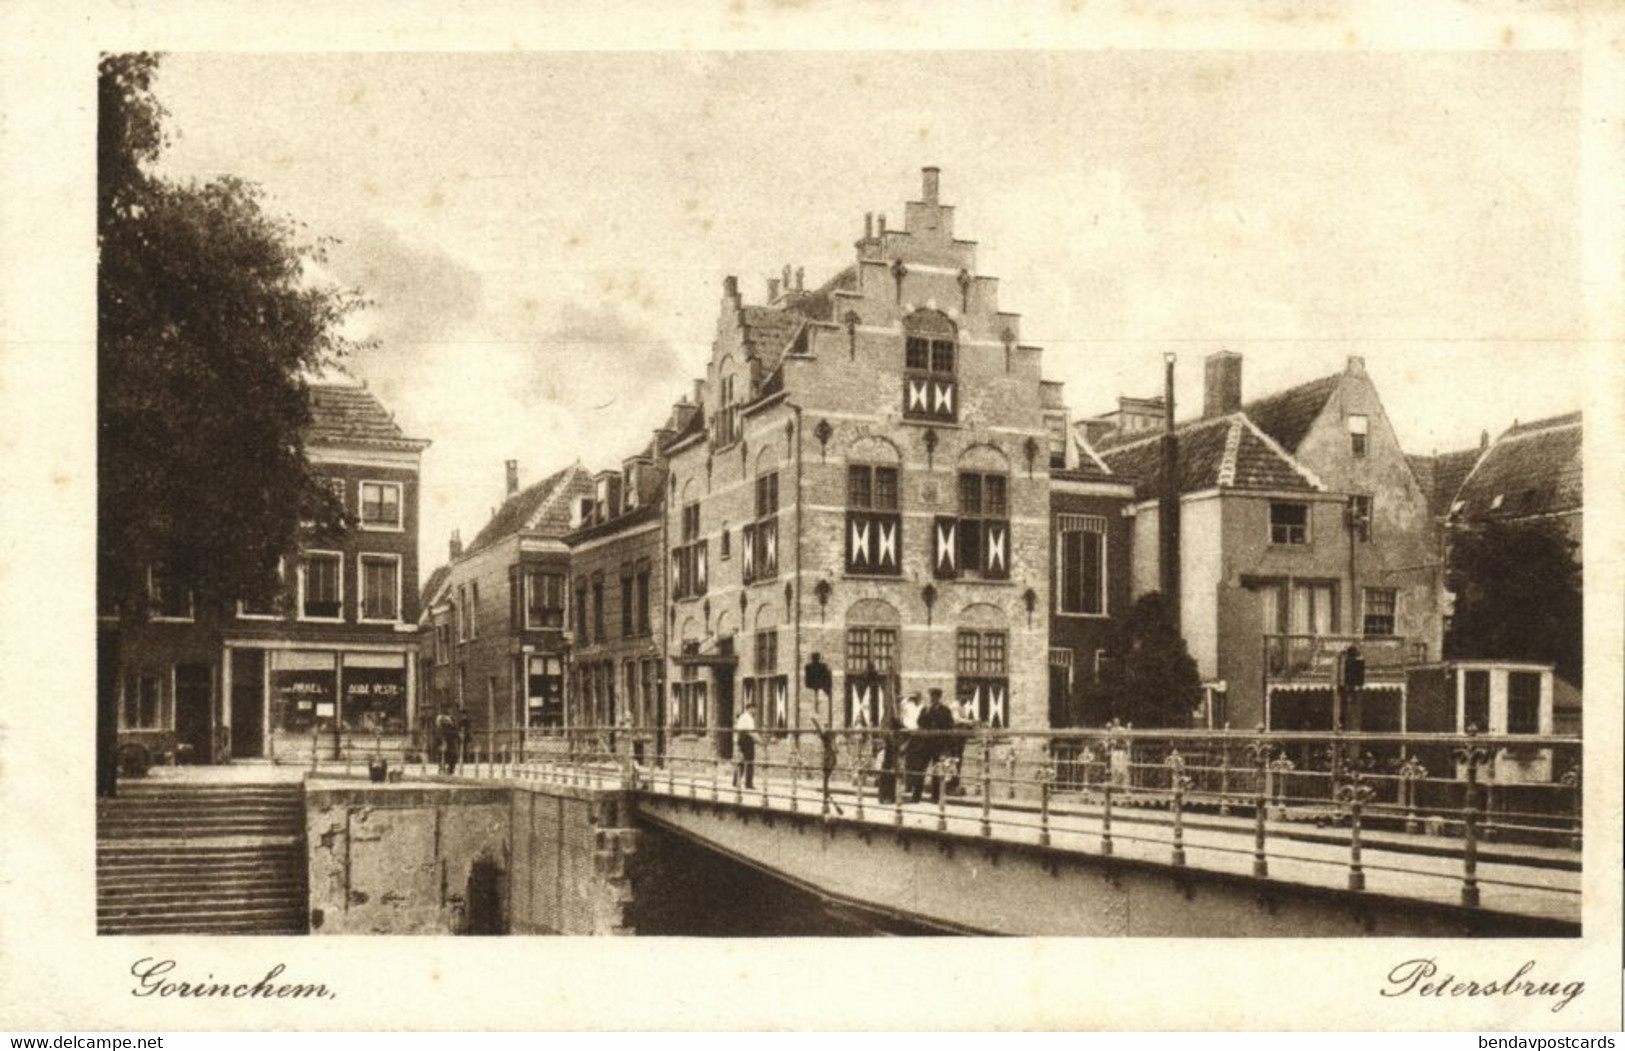 Nederland, GORINCHEM, Petersbrug (1930s) Ansichtkaart - Gorinchem